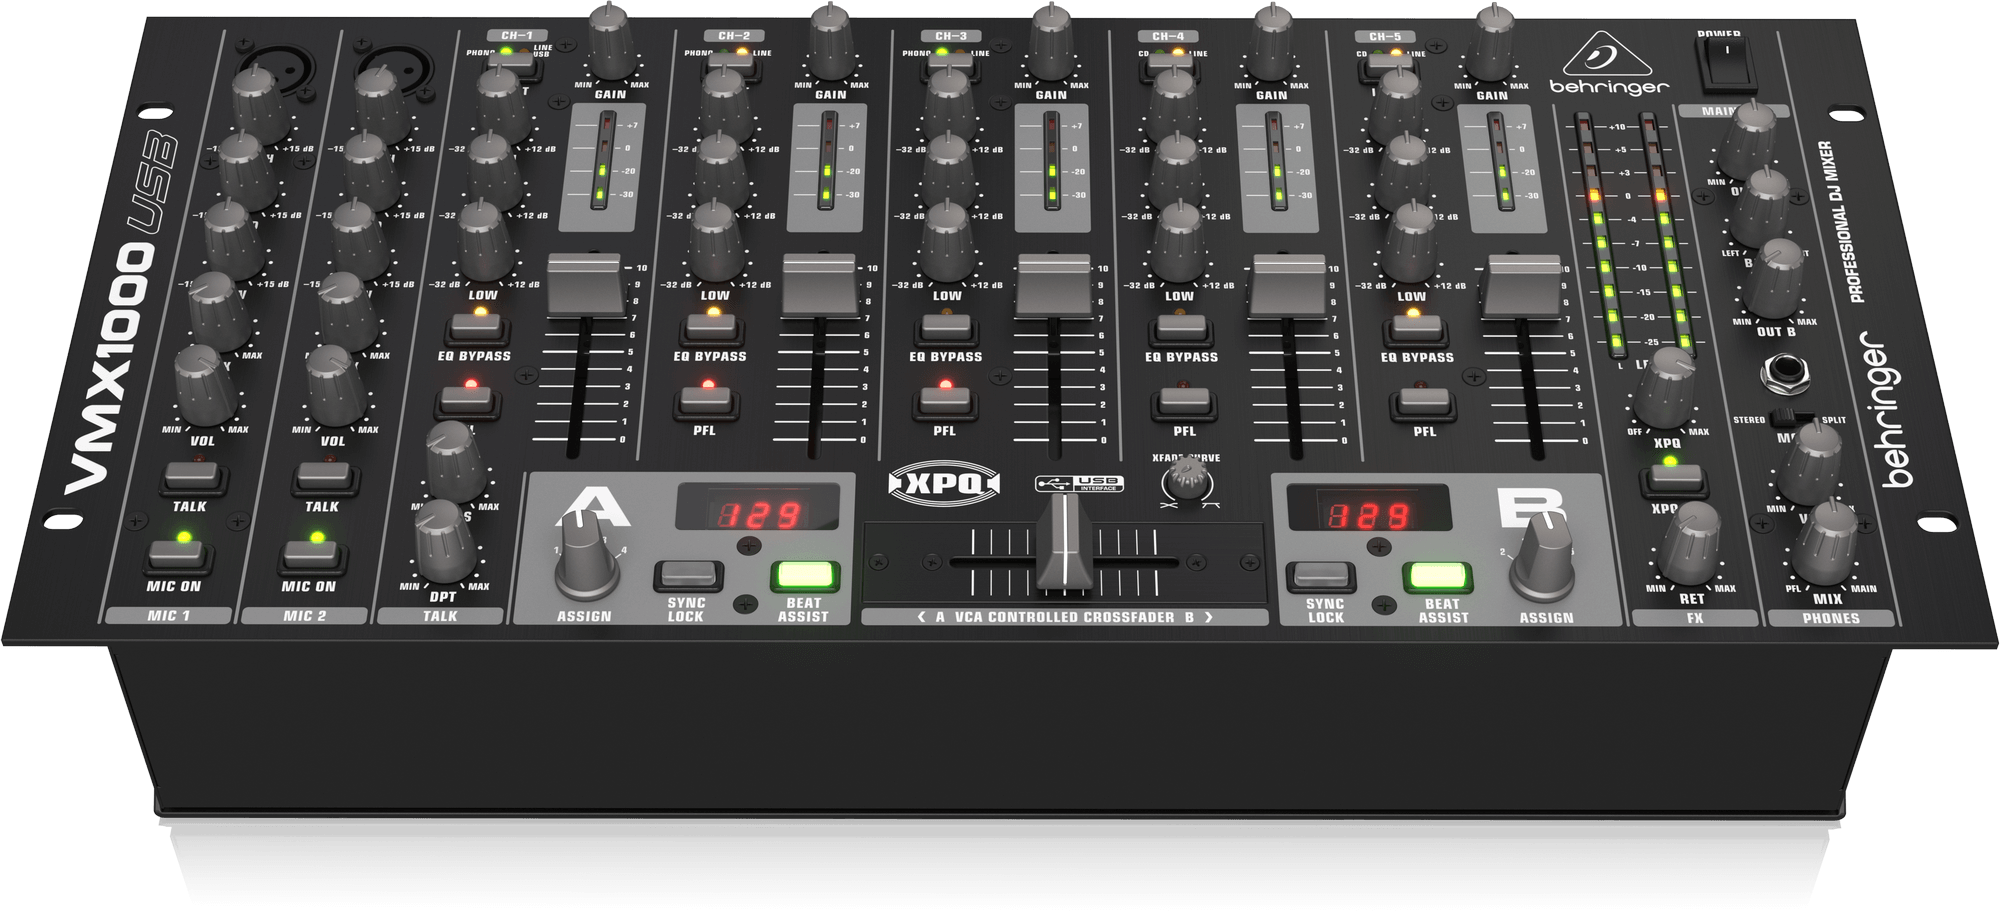 BEHRINGER VMX1000USB Tables de Mixage DJ